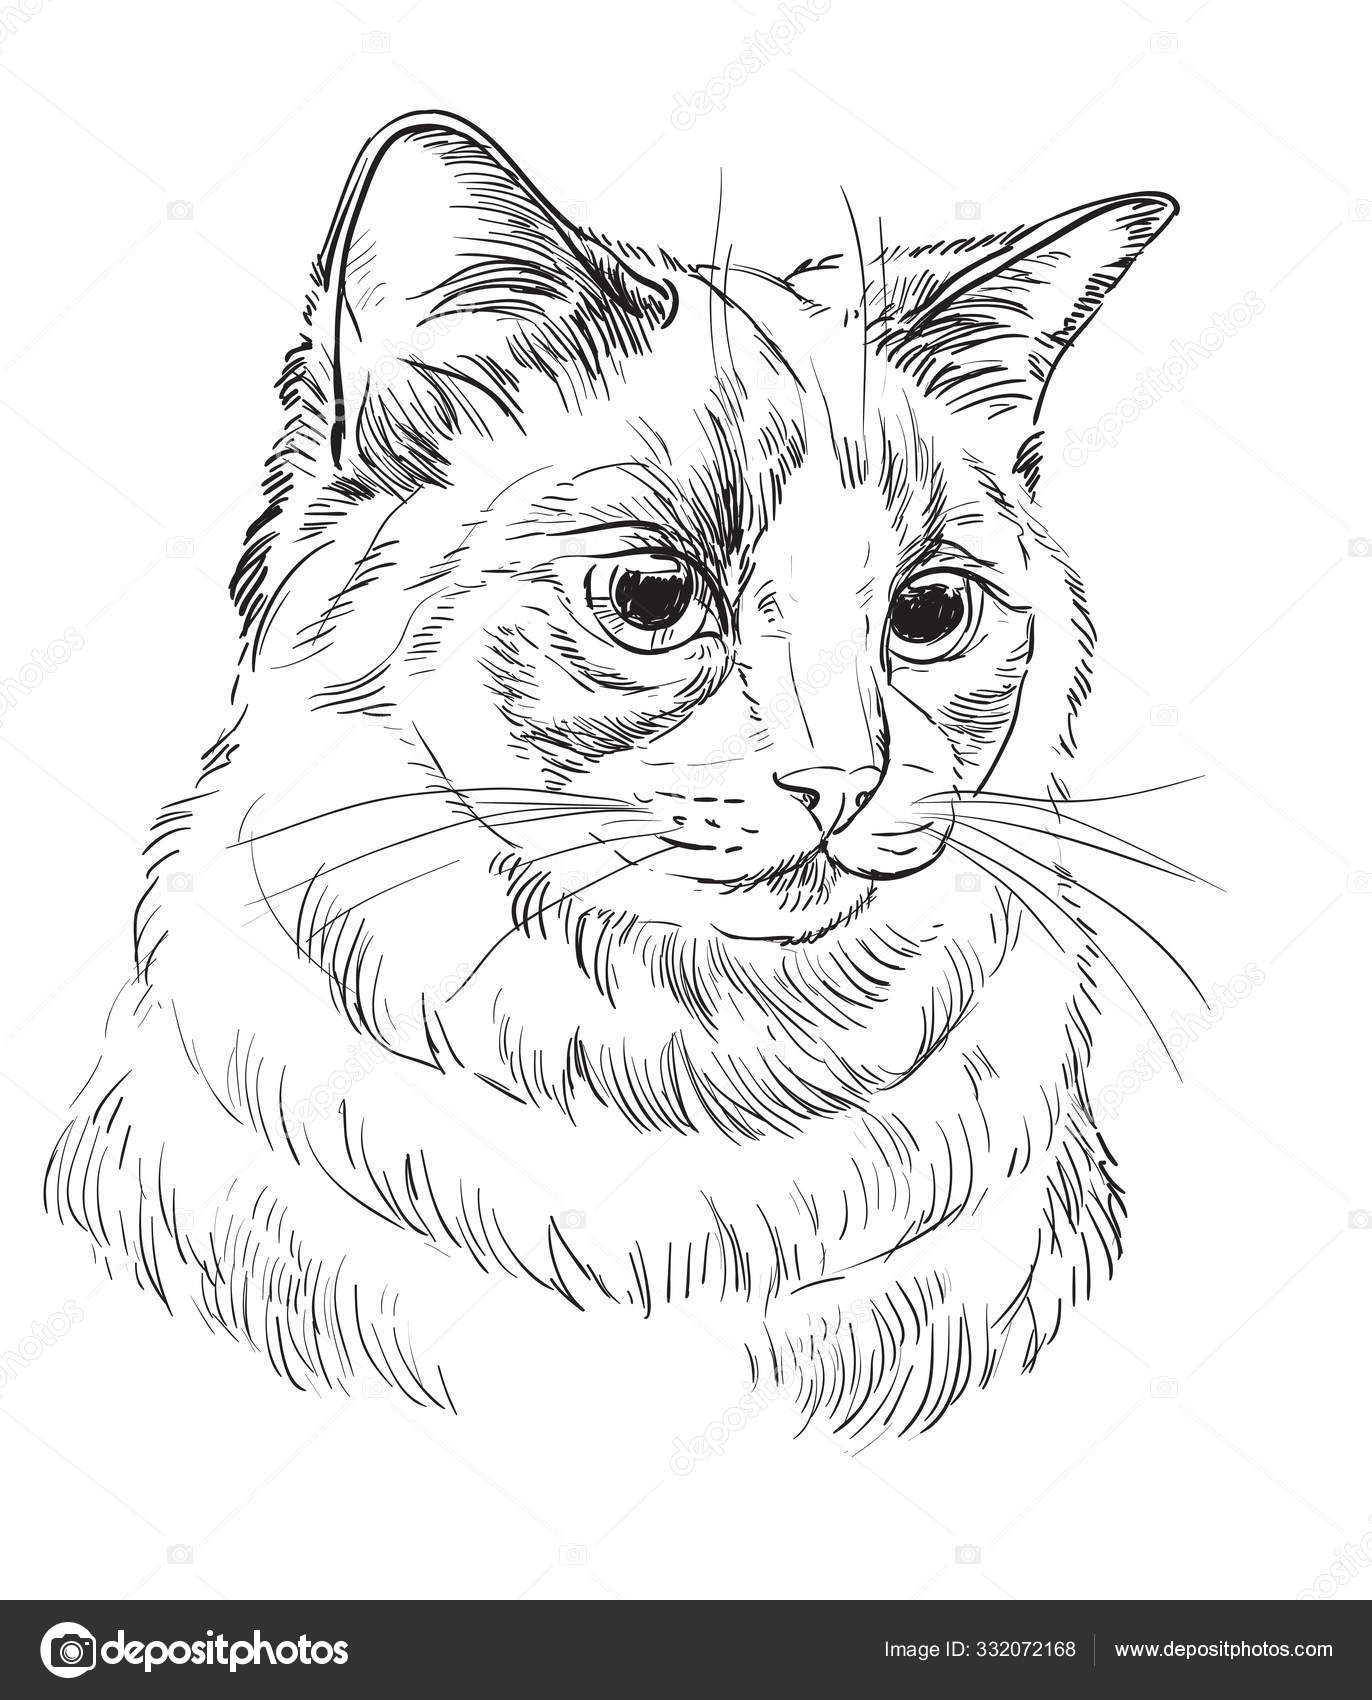 Vetor mão desenho gato 5 imagem vetorial de Alinart© 332072168